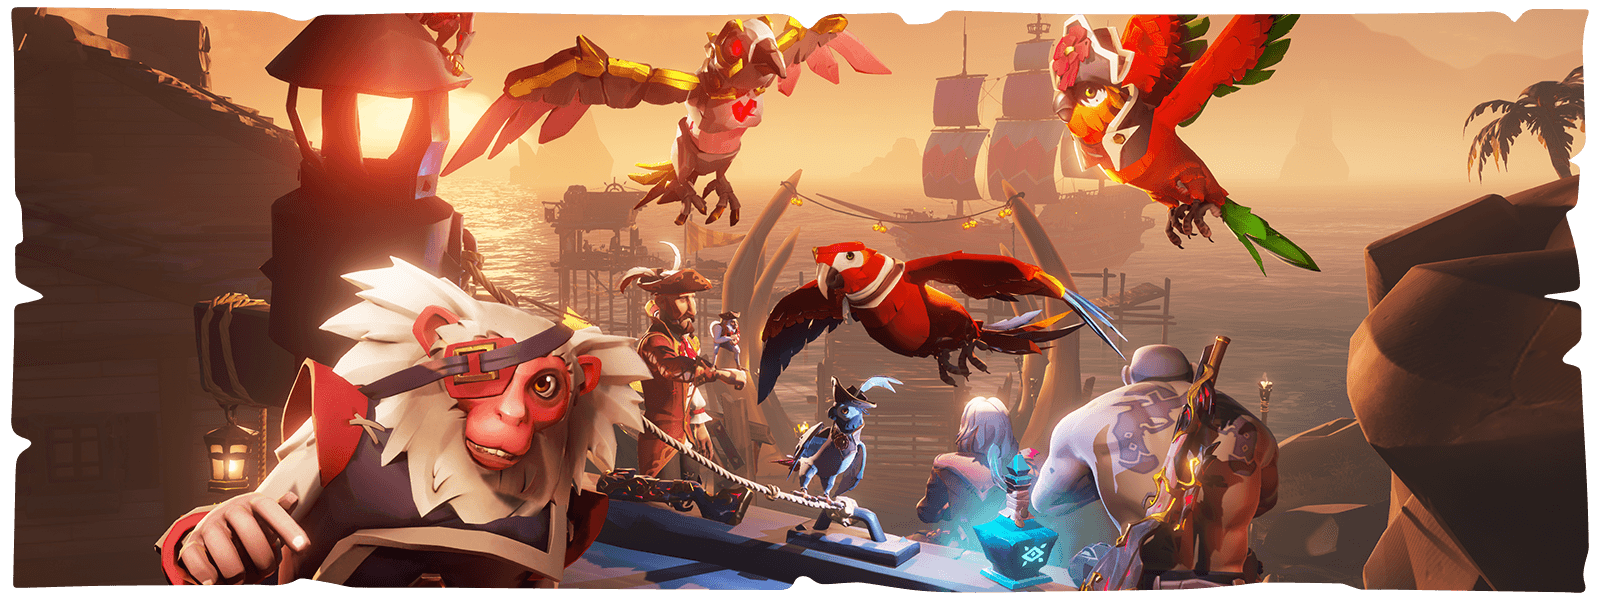 Χαρακτήρες, παπαγάλοι και μια μαϊμού μπροστά από ένα λιμάνι πλοίων από το Sea of Thieves